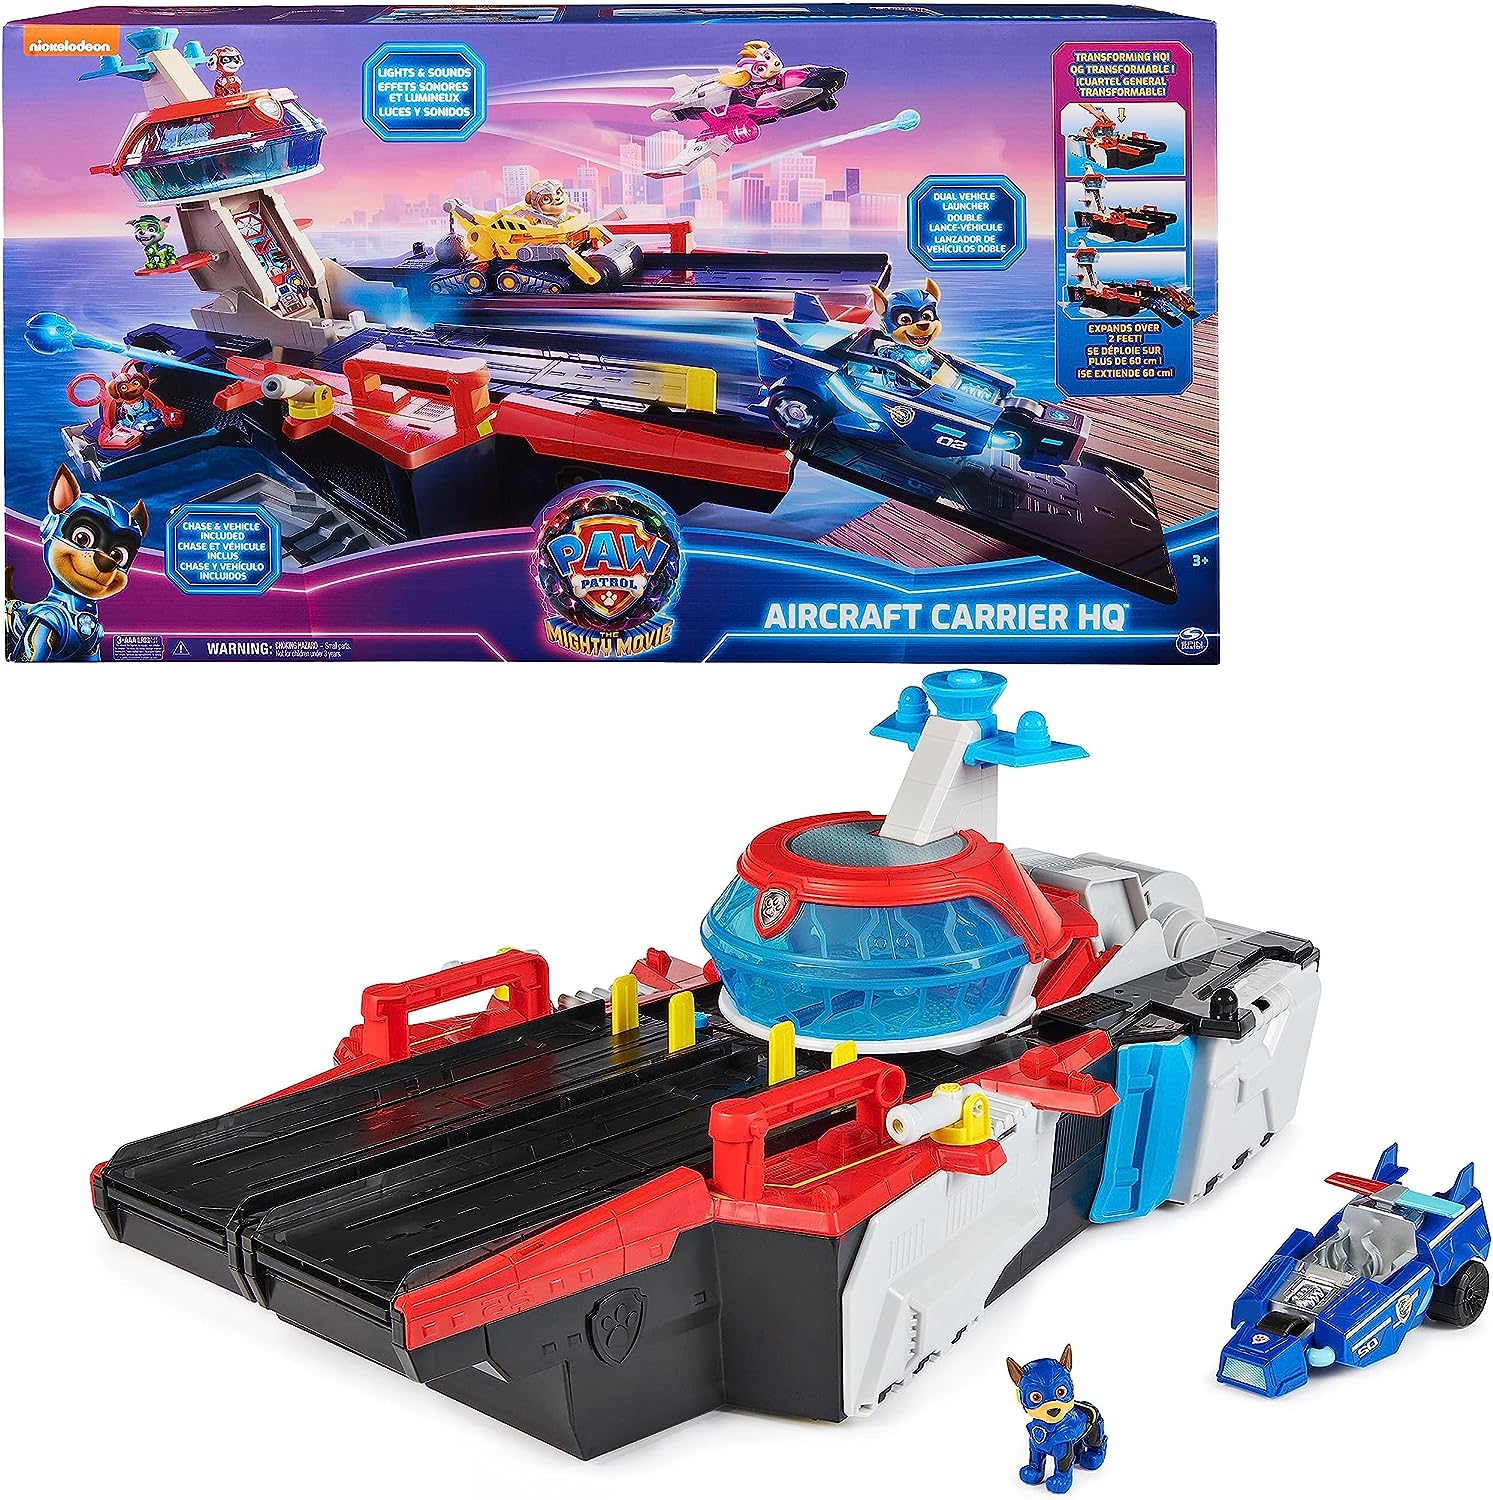 Bild mit Marine Hauptquartier im Schiffs-Design, Chase, sein Polizeiauto und die Spielzeug-Set Verpackung 